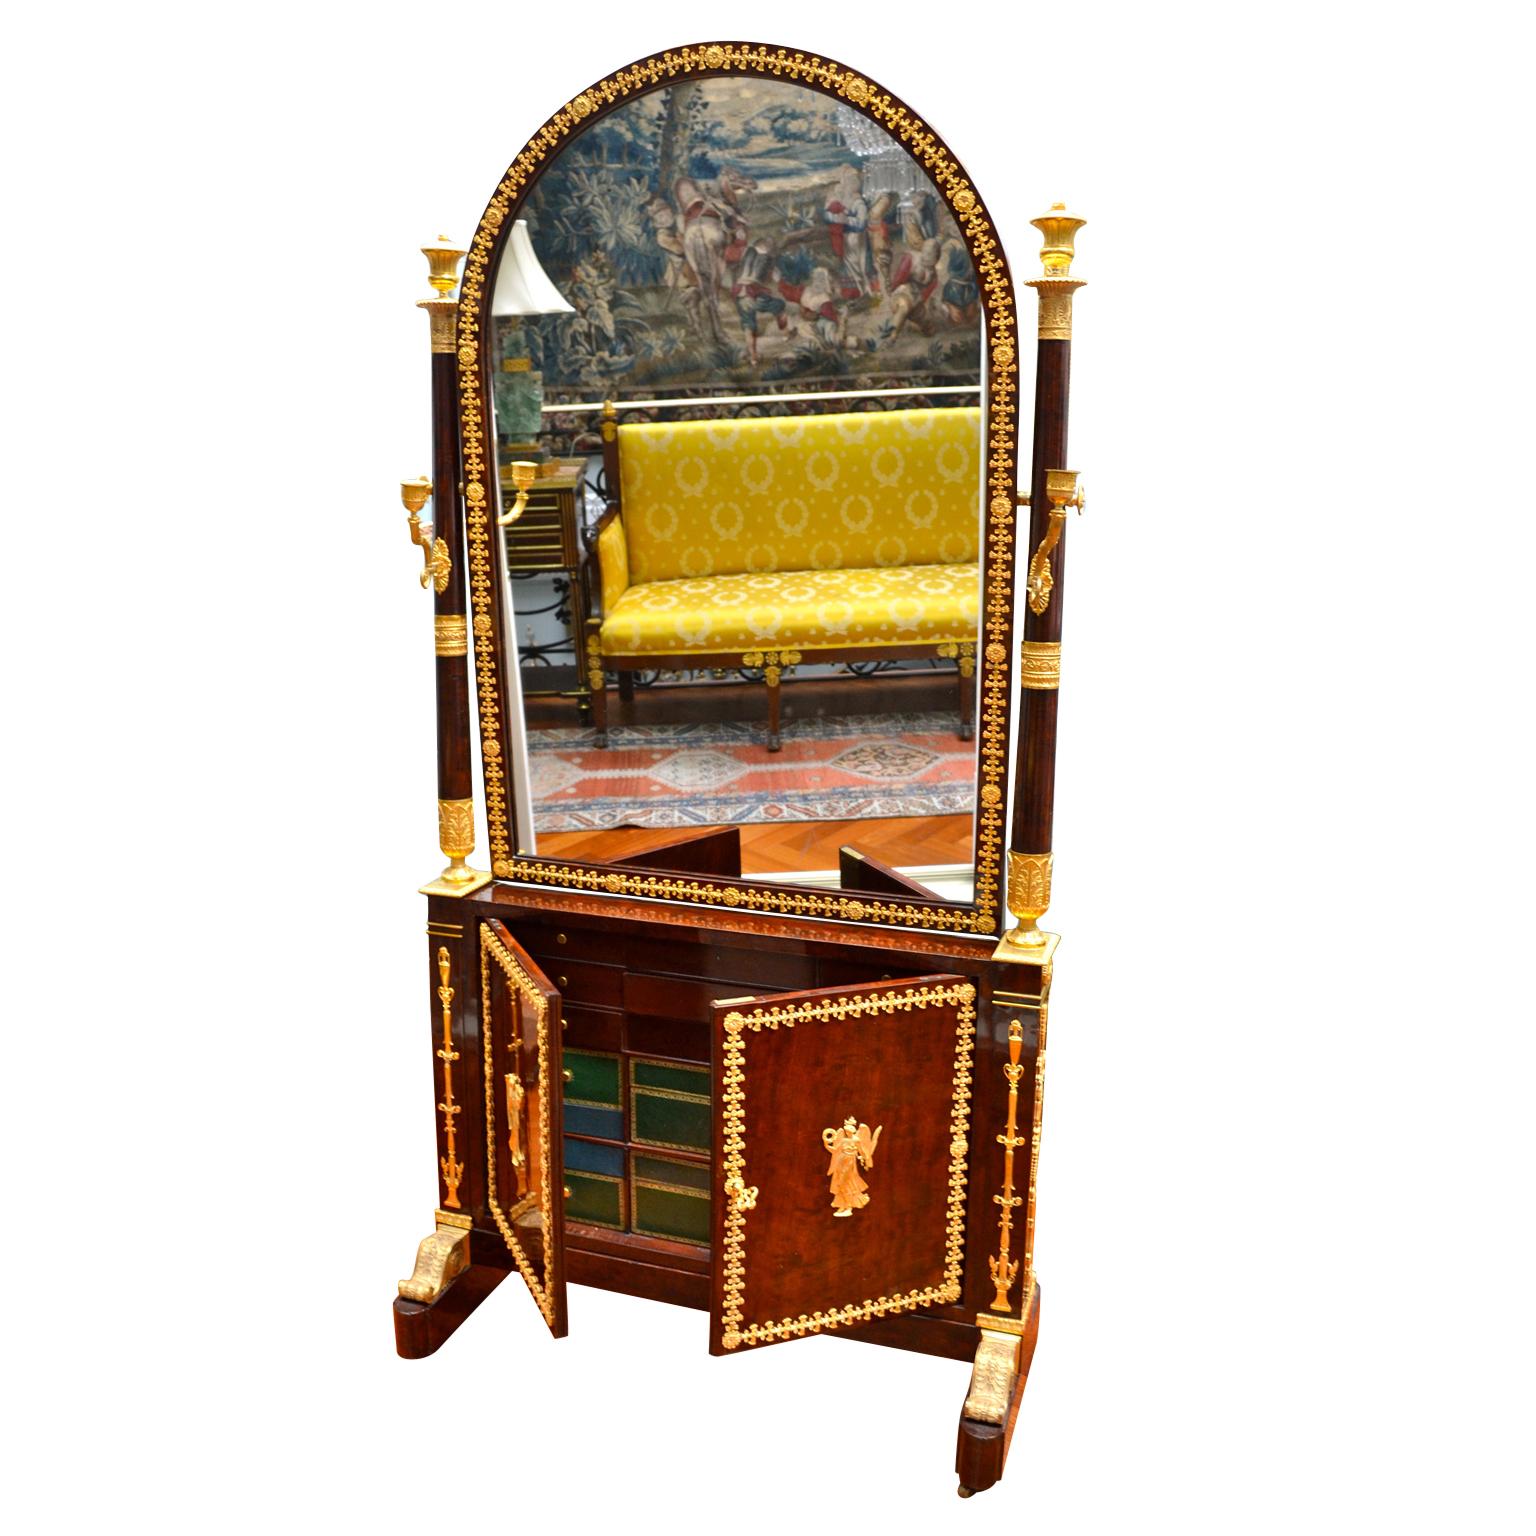 Ein Spiegel- und Schmuckschrank aus Mahagoni, der einst Leitizia Bonaparte, der Mutter von Napoleon, gehörte. Der furnierte, halbrunde Spiegel wird von Säulen umrahmt, die mit vergoldeten Bronzekassetten und einarmigen Kerzenhaltern versehen